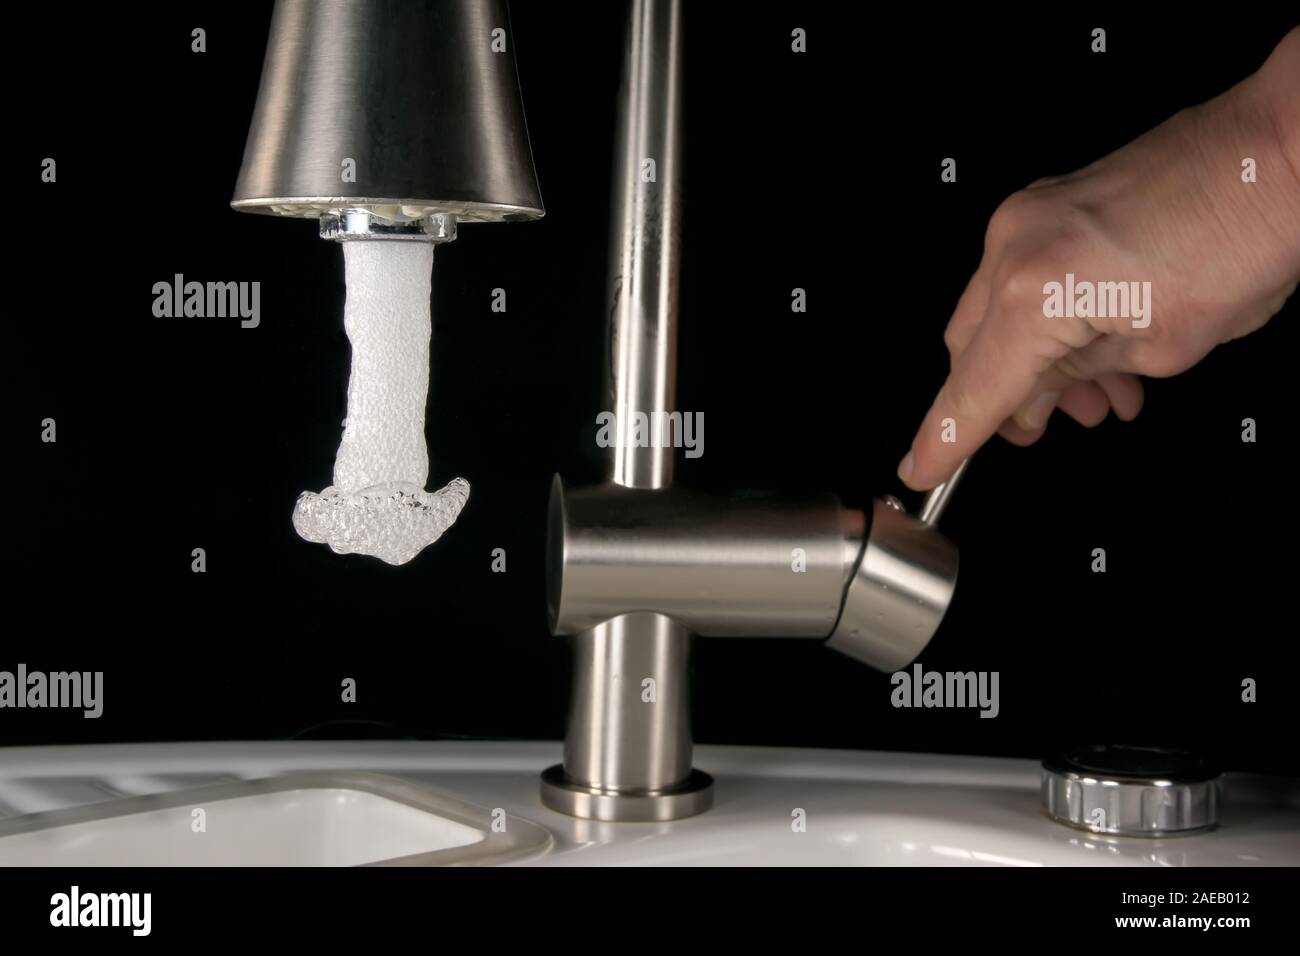 L'eau qui sort d'un robinet - haute vitesse libre Banque D'Images